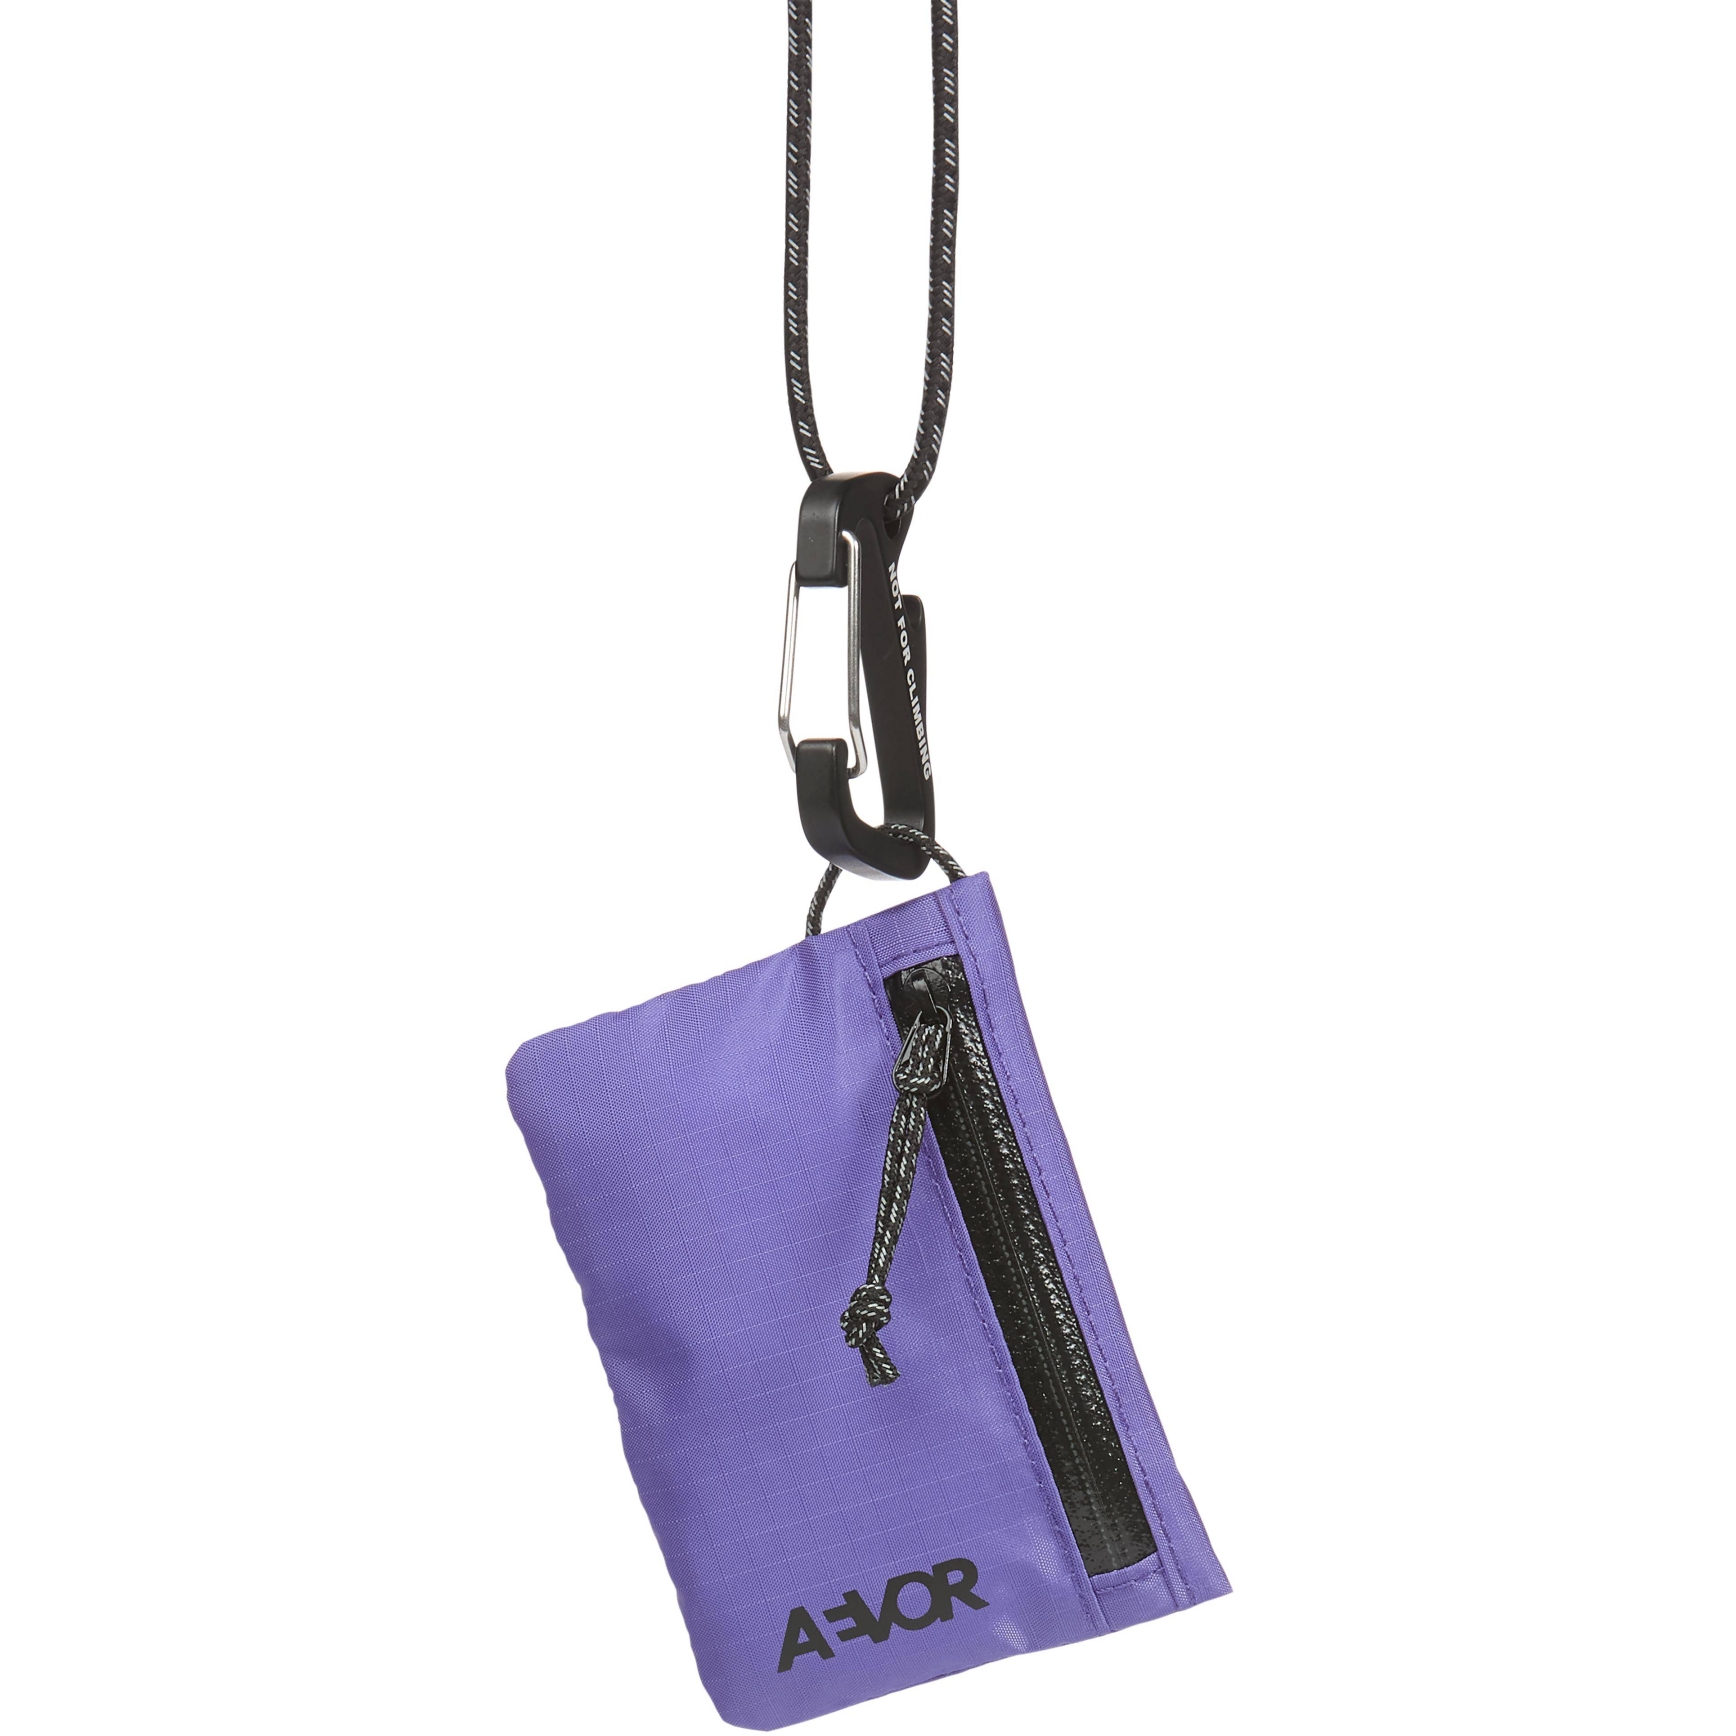 Produktbild von AEVOR Explore Wallet Geldbörse - Ripstop Purple